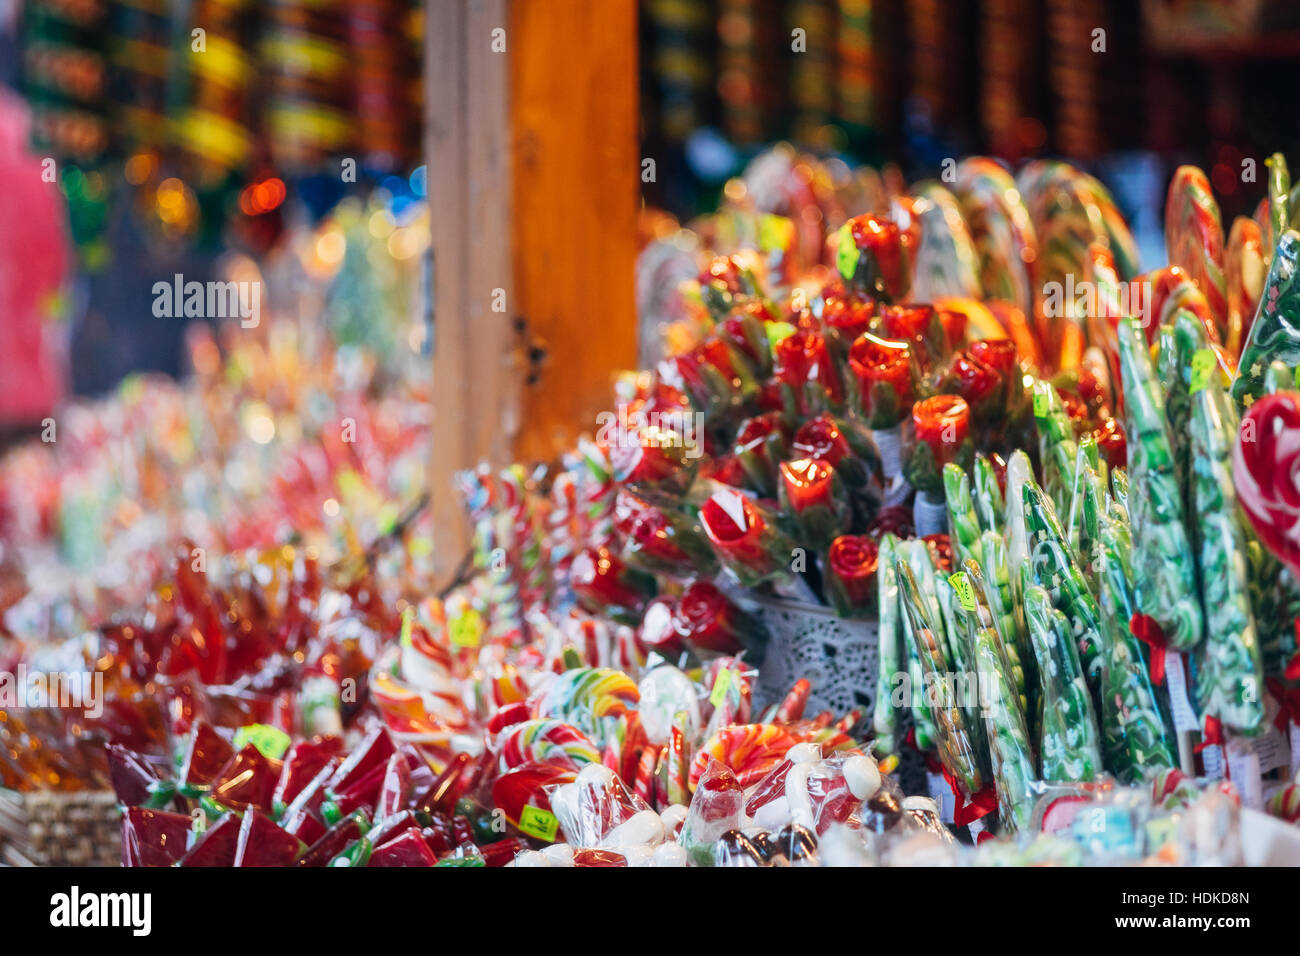 Avec décrochage festif et coloré les friandises à la marché de Noël, selective focus Banque D'Images